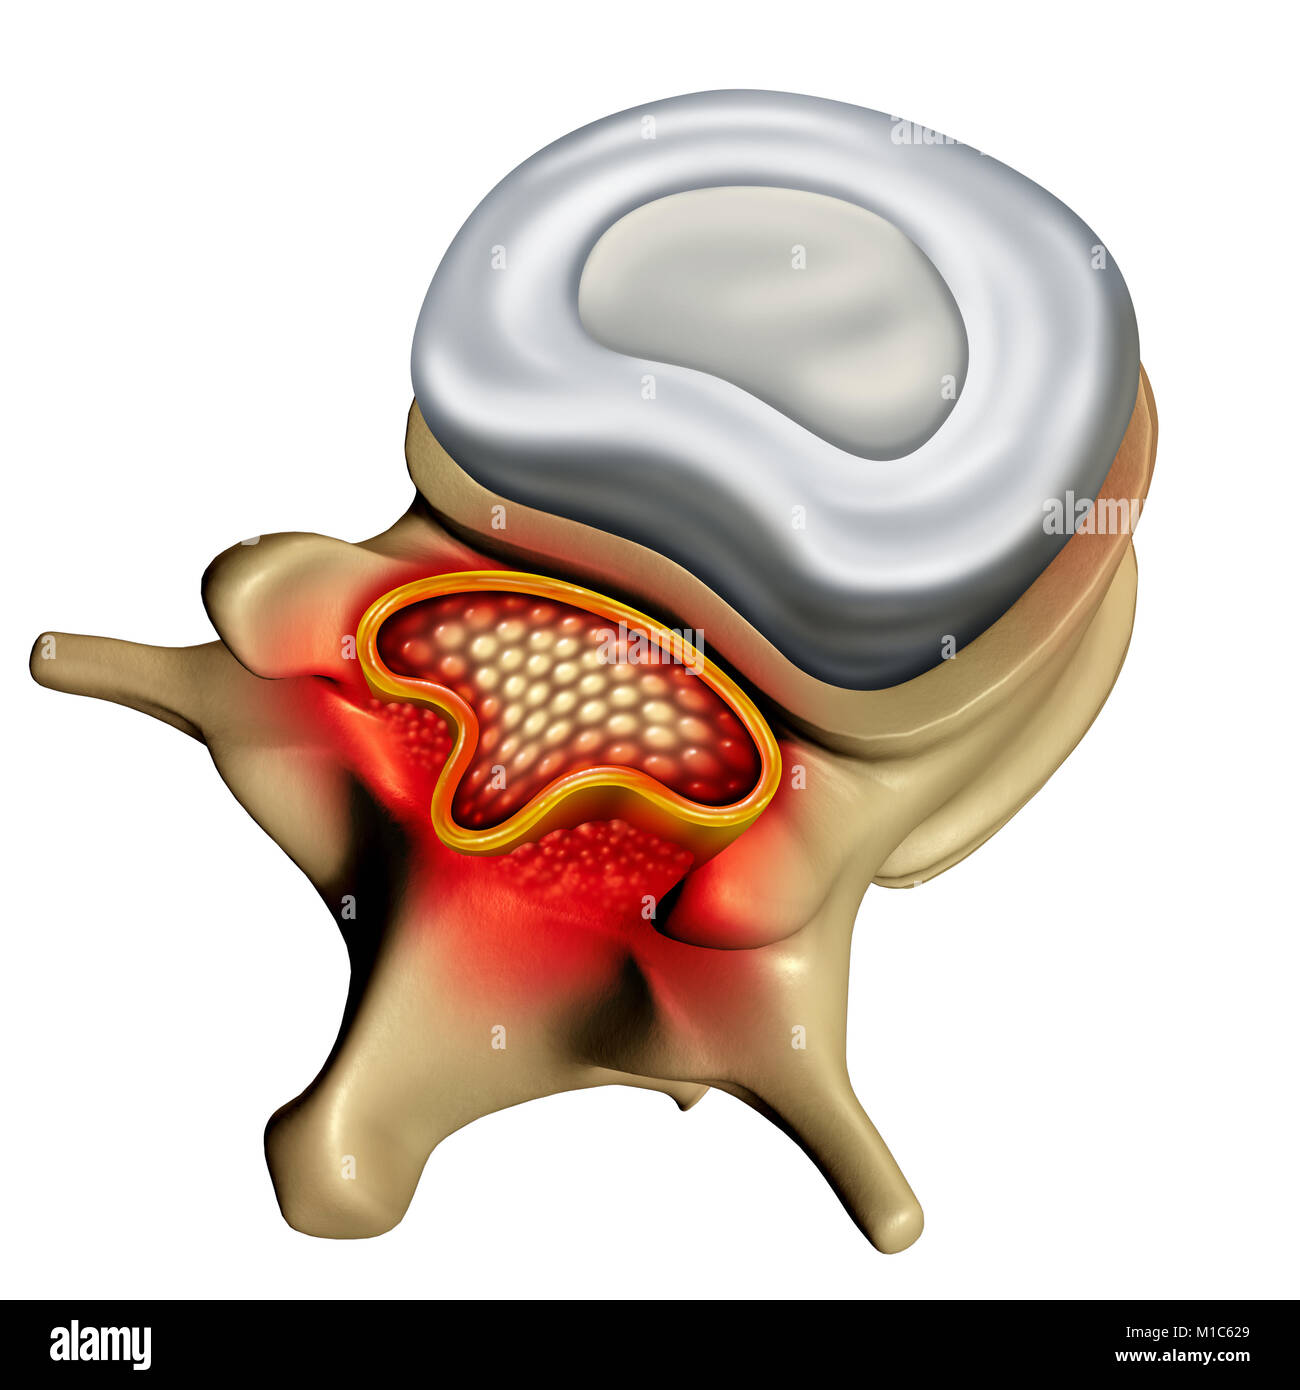 Spinale Stenose als degenerative Erkrankung der menschlichen Wirbelsäule verursachen komprimierte Wirbelsäule Nerven medizinisches Konzept als 3D-Darstellung. Stockfoto